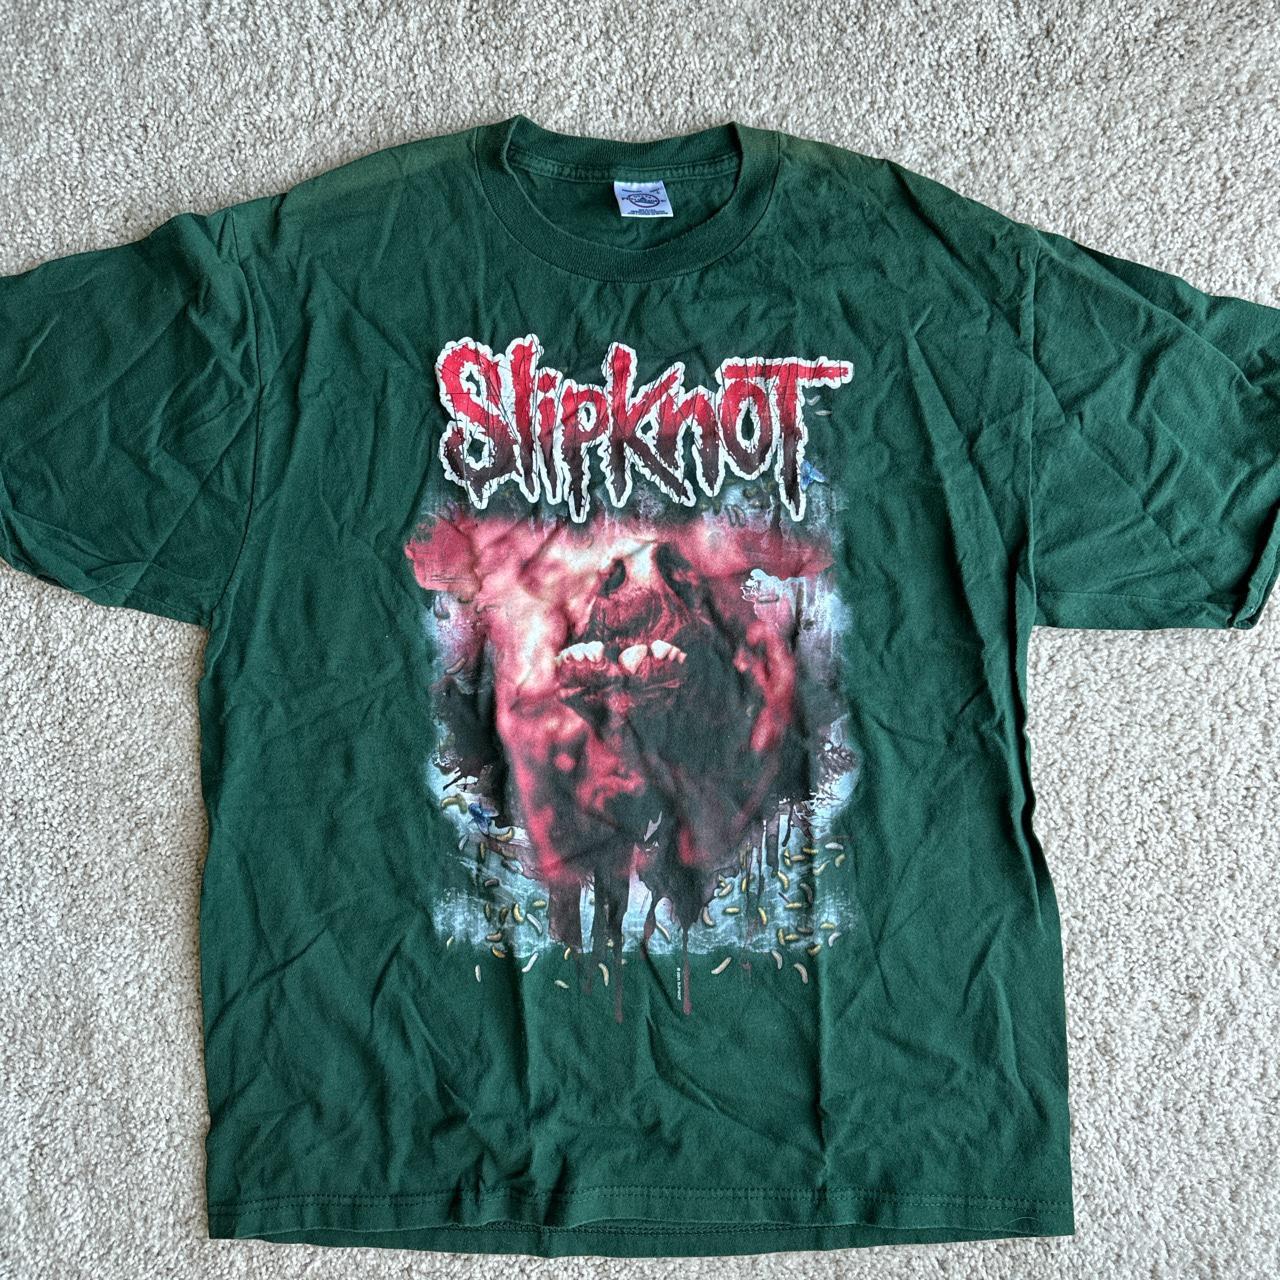 Slipknot t shirt vintage large L OG 2001 graphic t - Depop